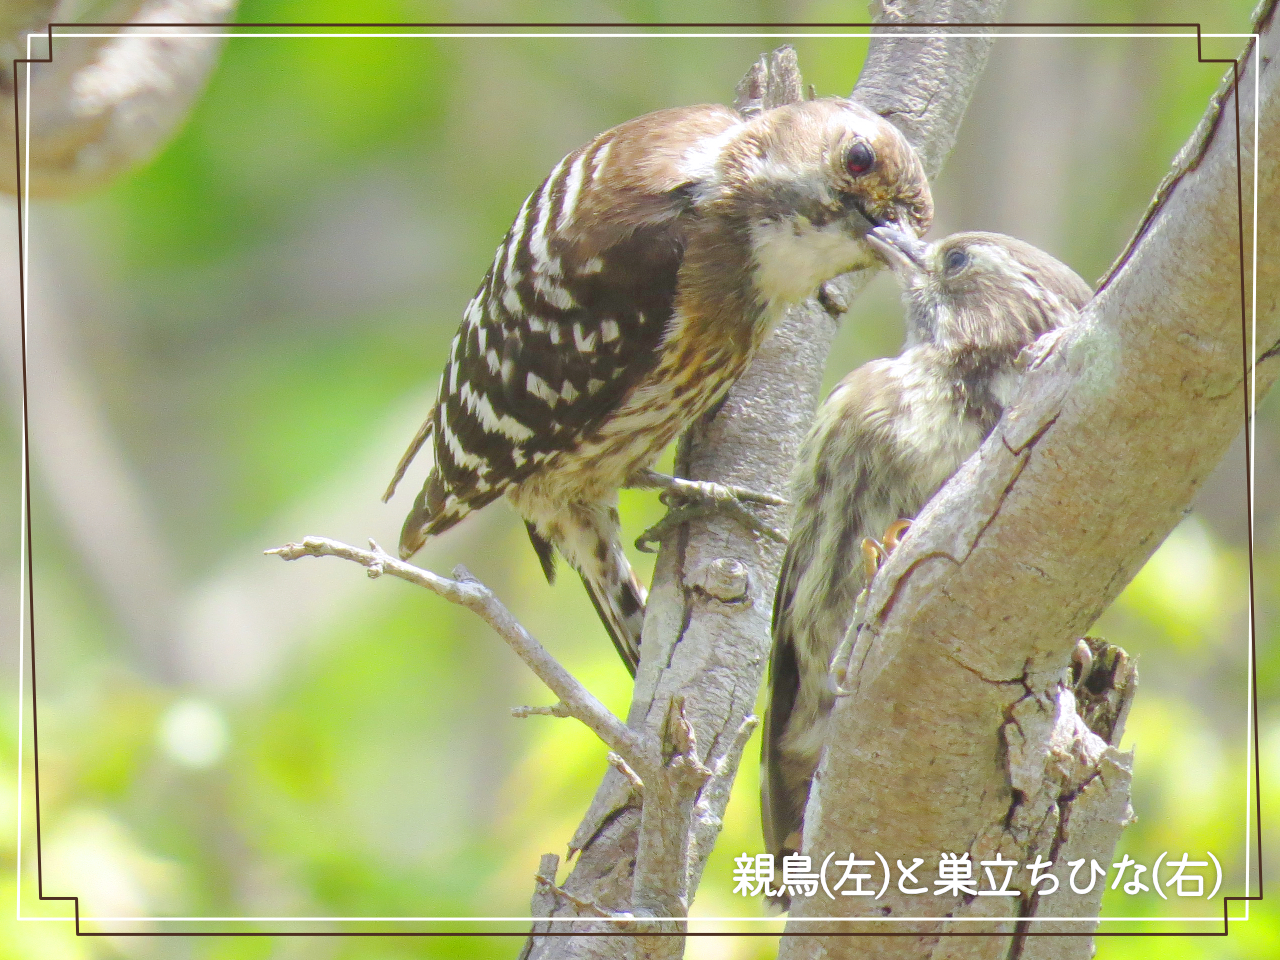 コゲラの親鳥と巣立ちひなの写真